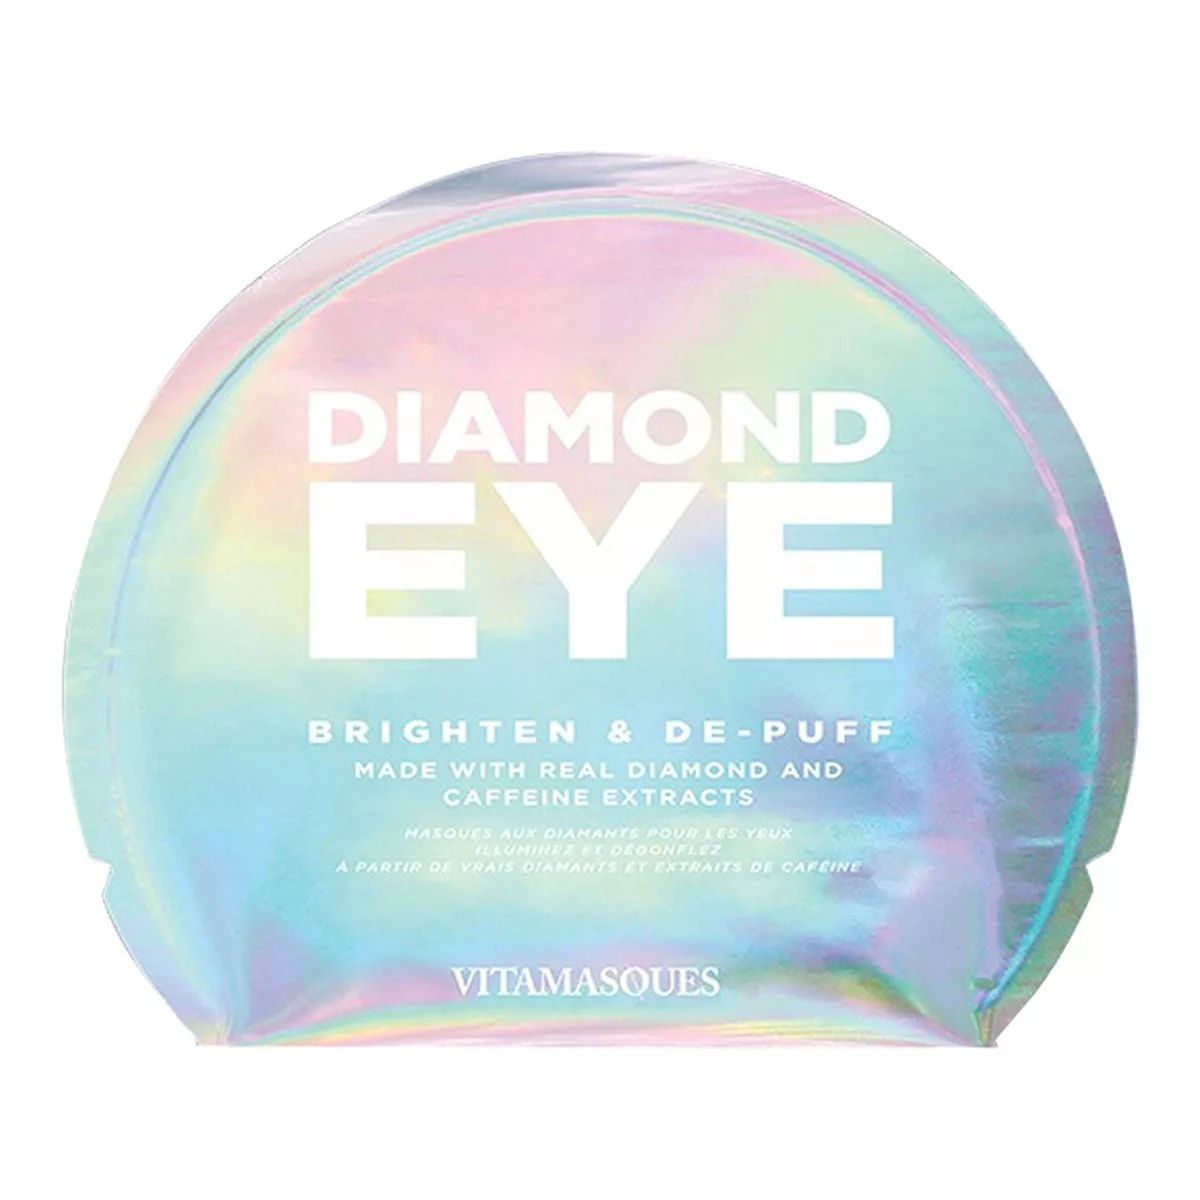 Vitamasques 2 in 1 Diamond Eye Mask - 0.1 fl oz | Target